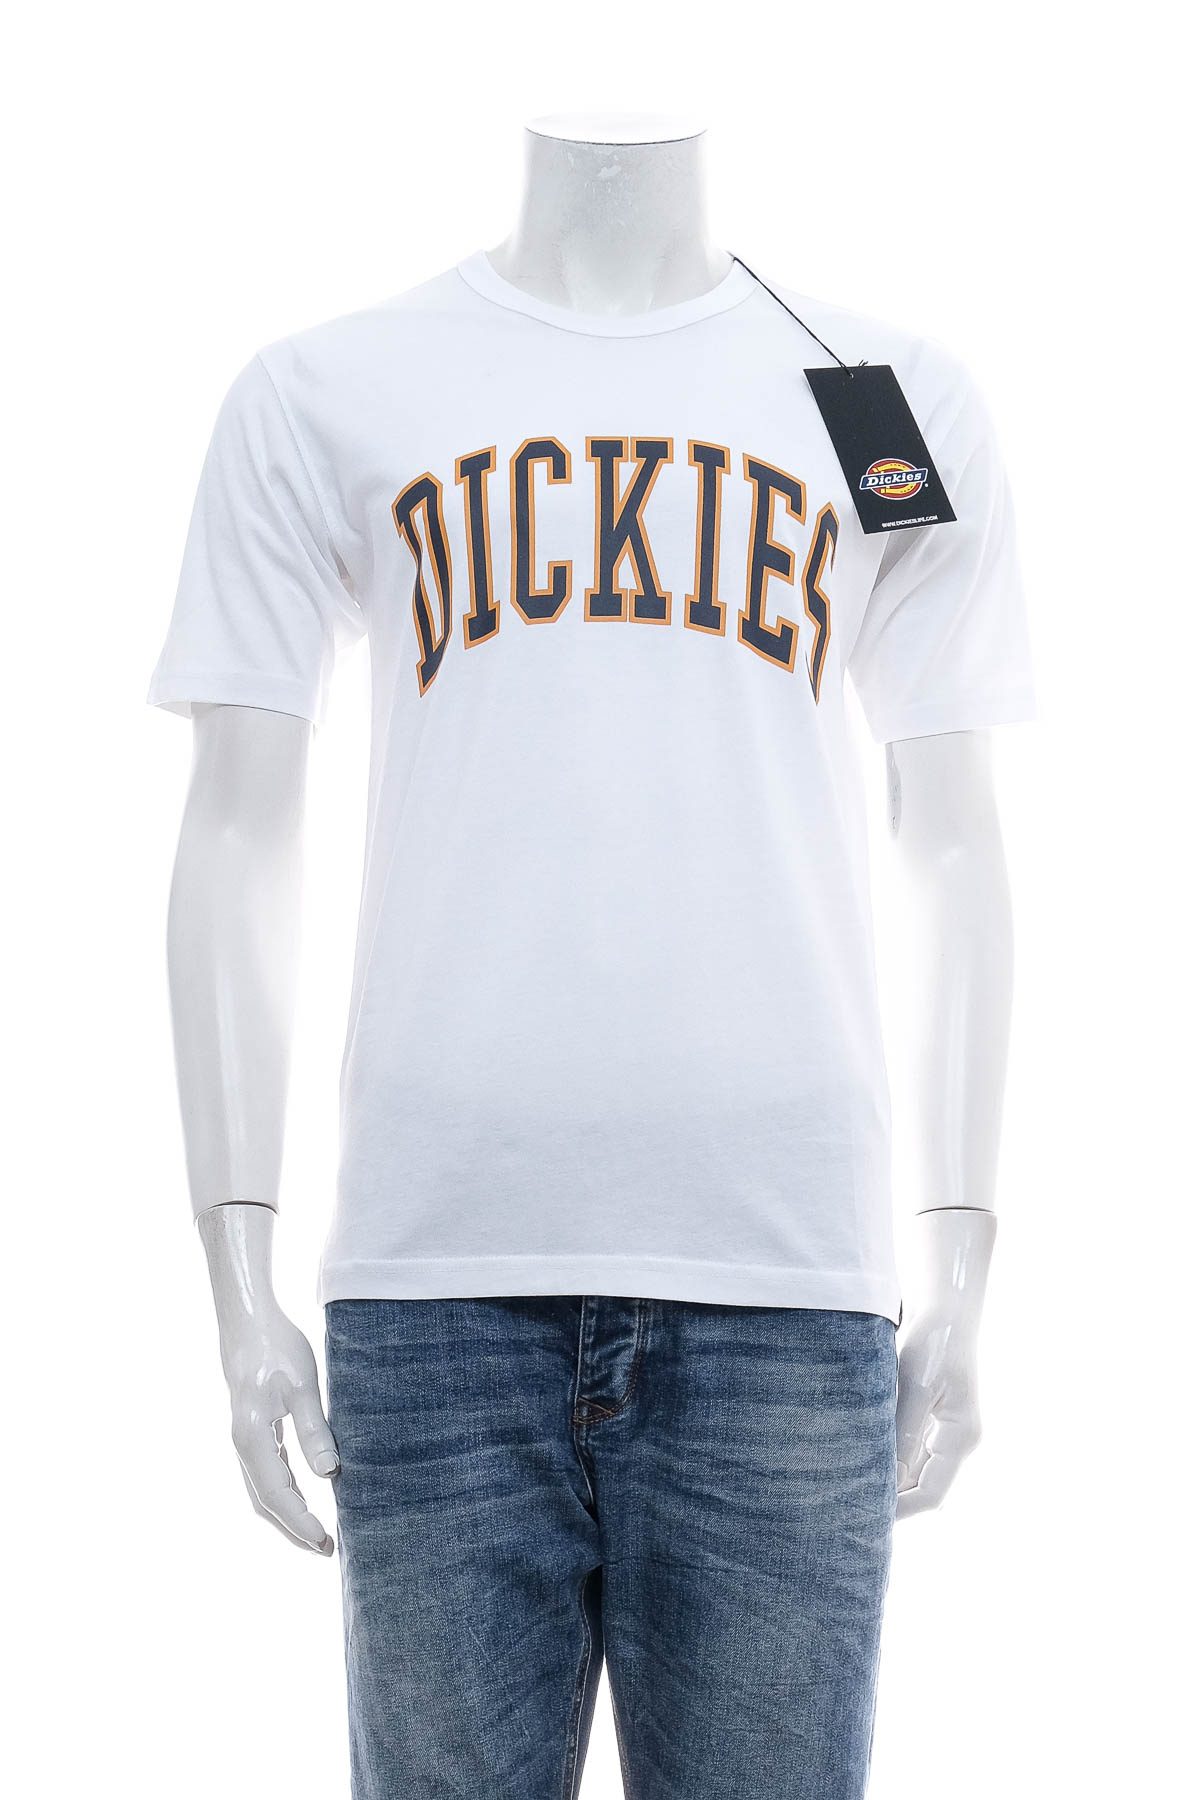 Αντρική μπλούζα - Dickies - 0